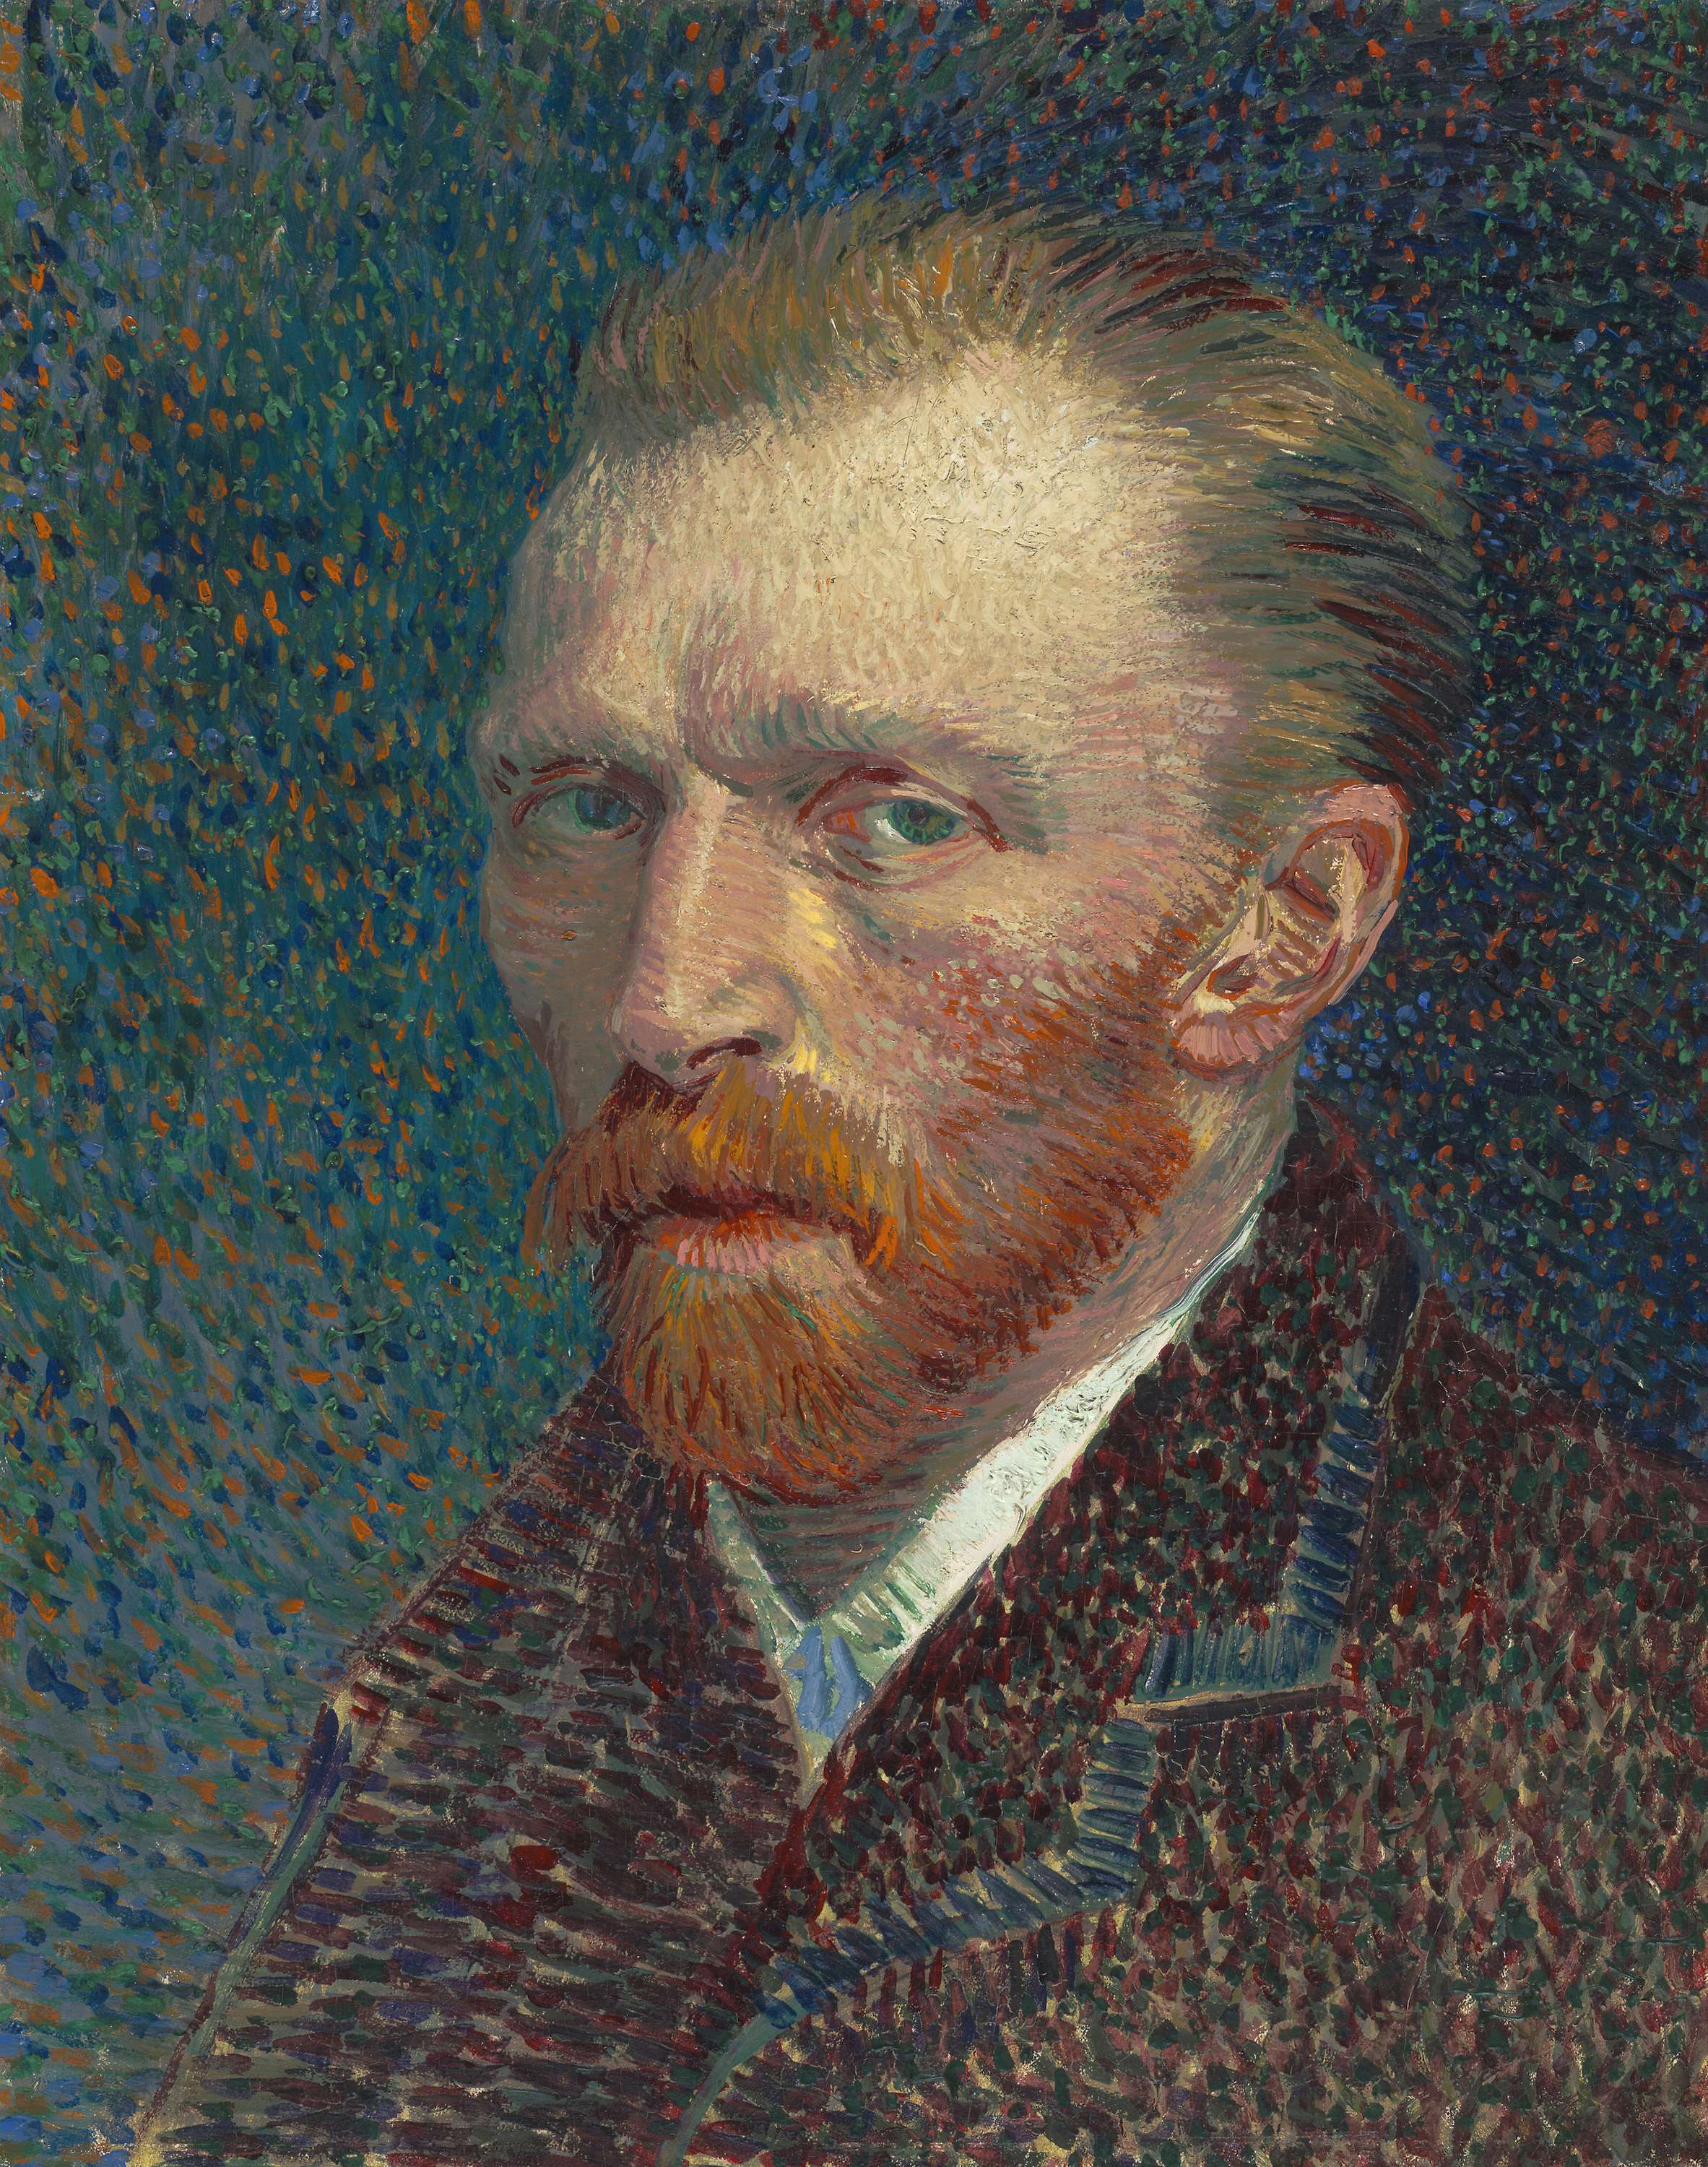 ゴッホの自画像に特化した世界初の展覧会。「Van Gogh Self-Portraits